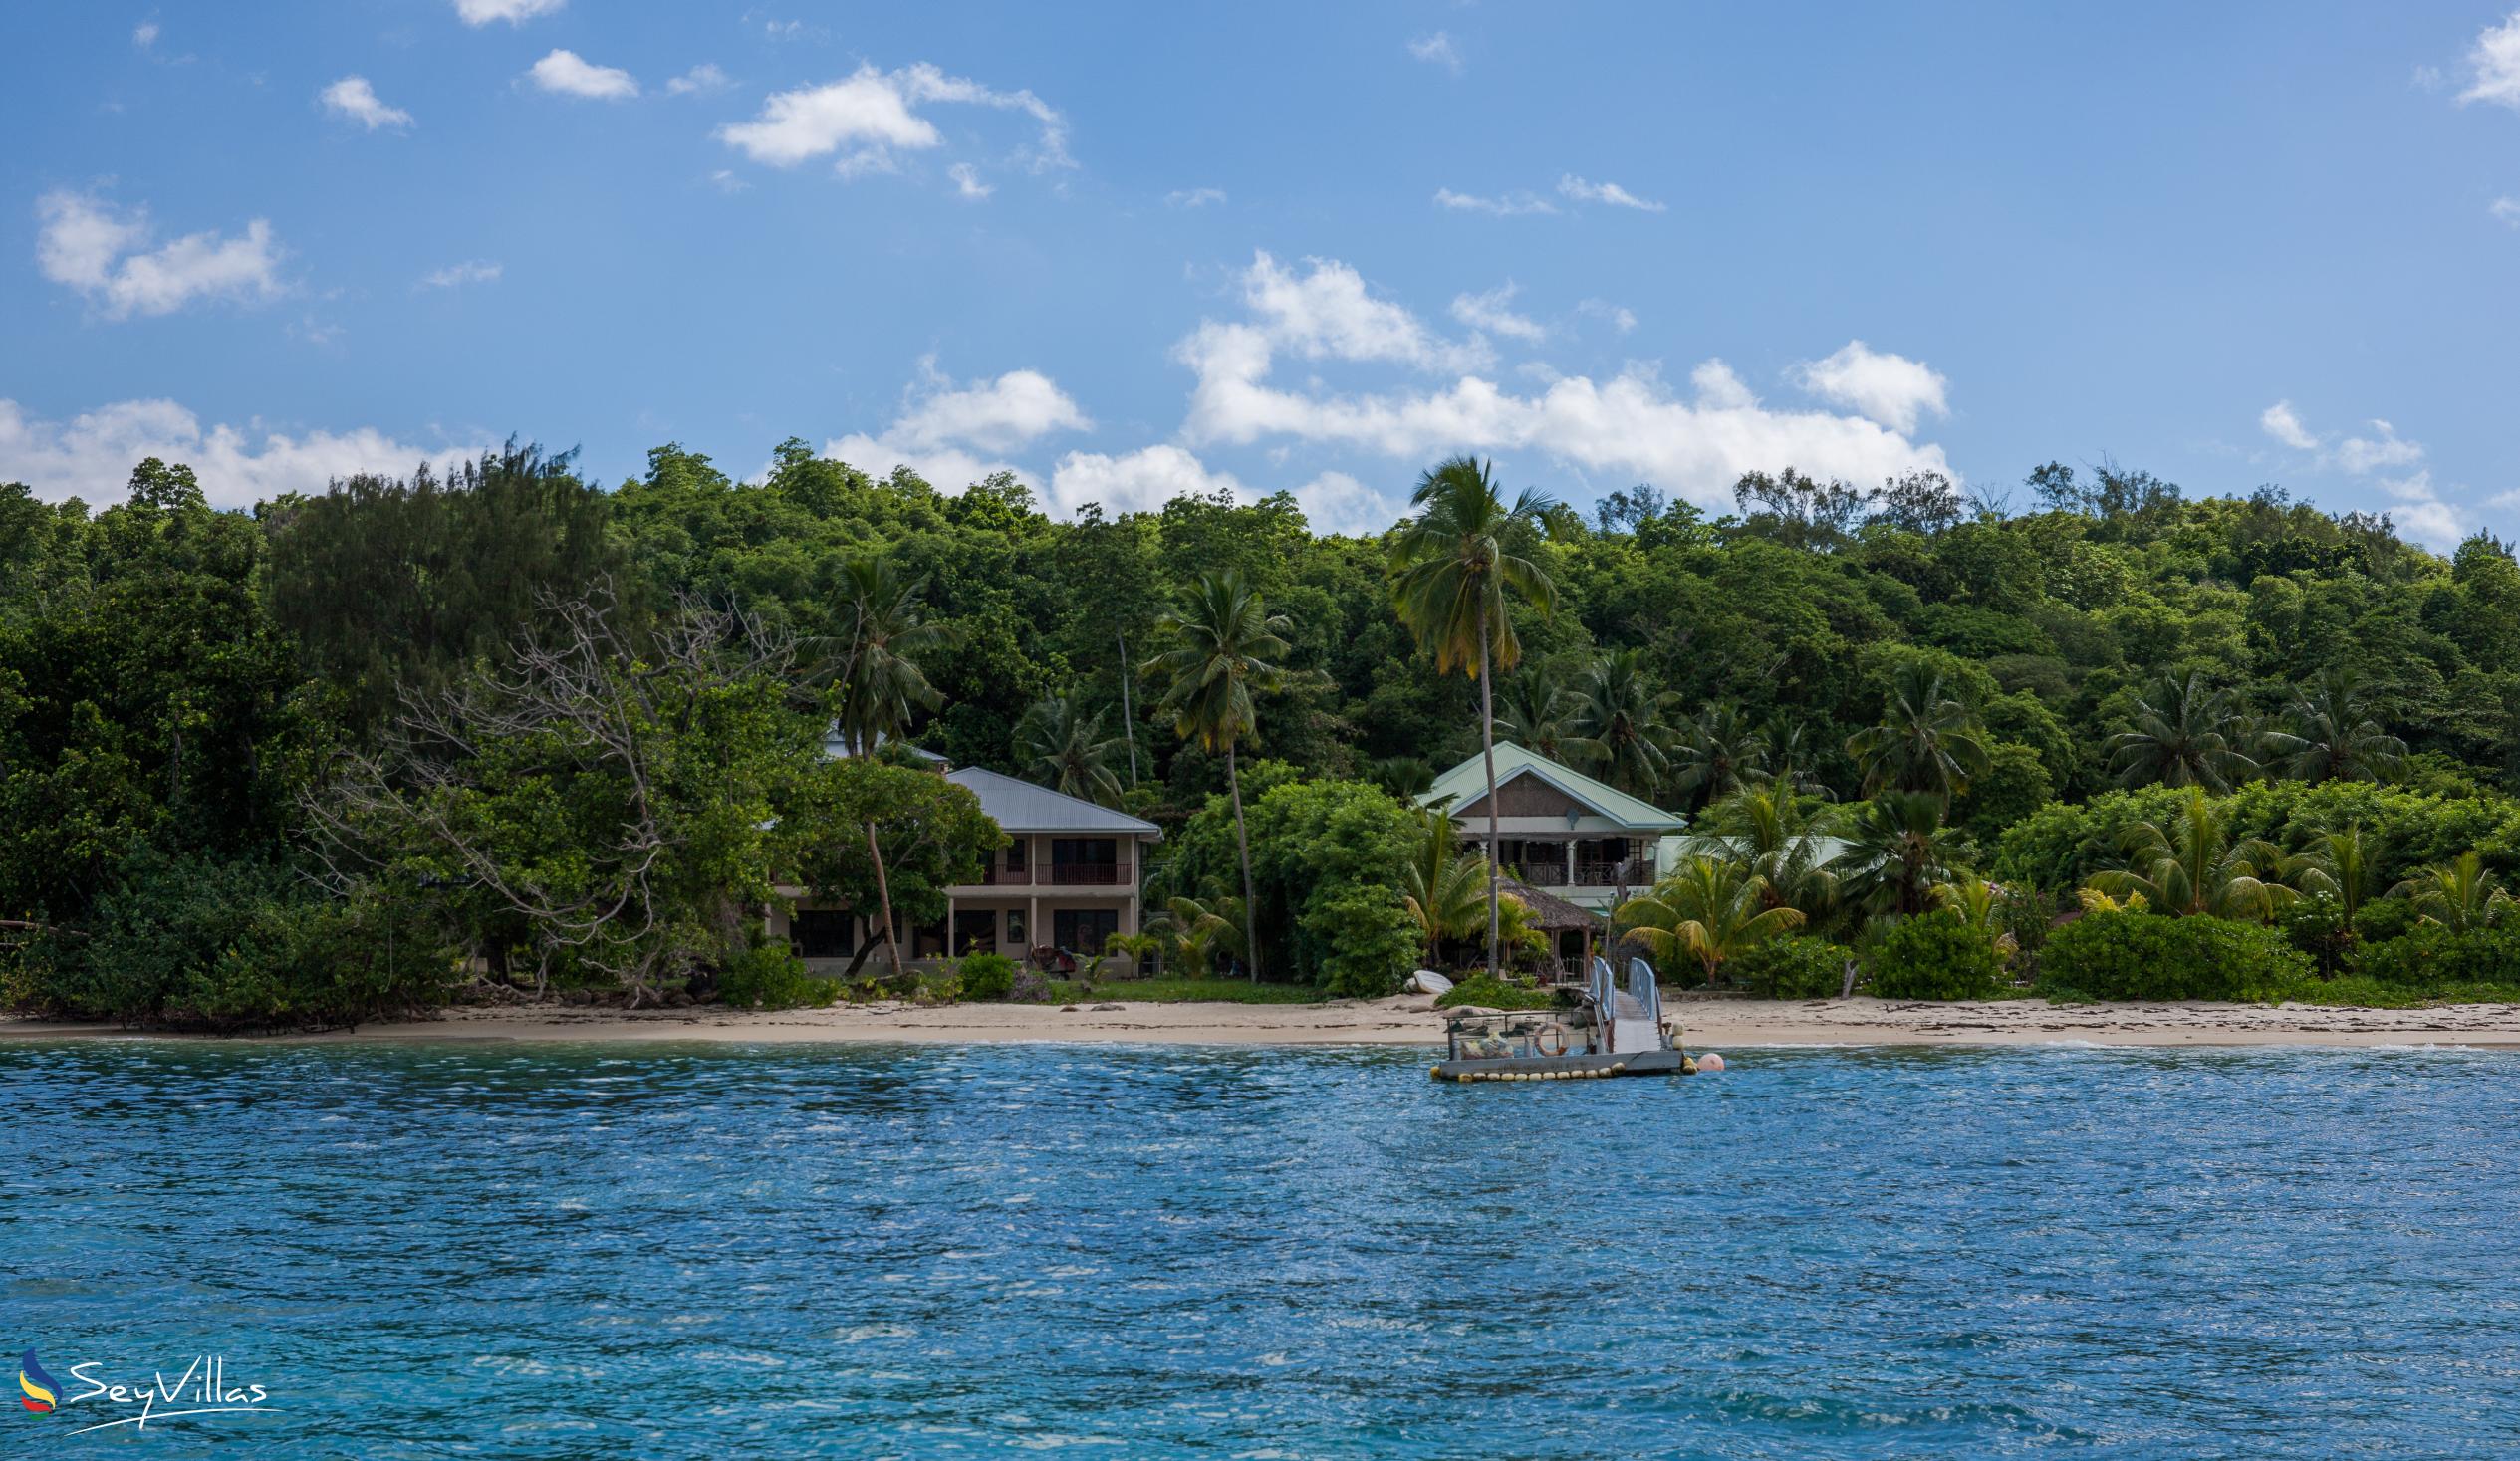 Foto 16: Villa de Cerf - Posizione - Cerf Island (Seychelles)